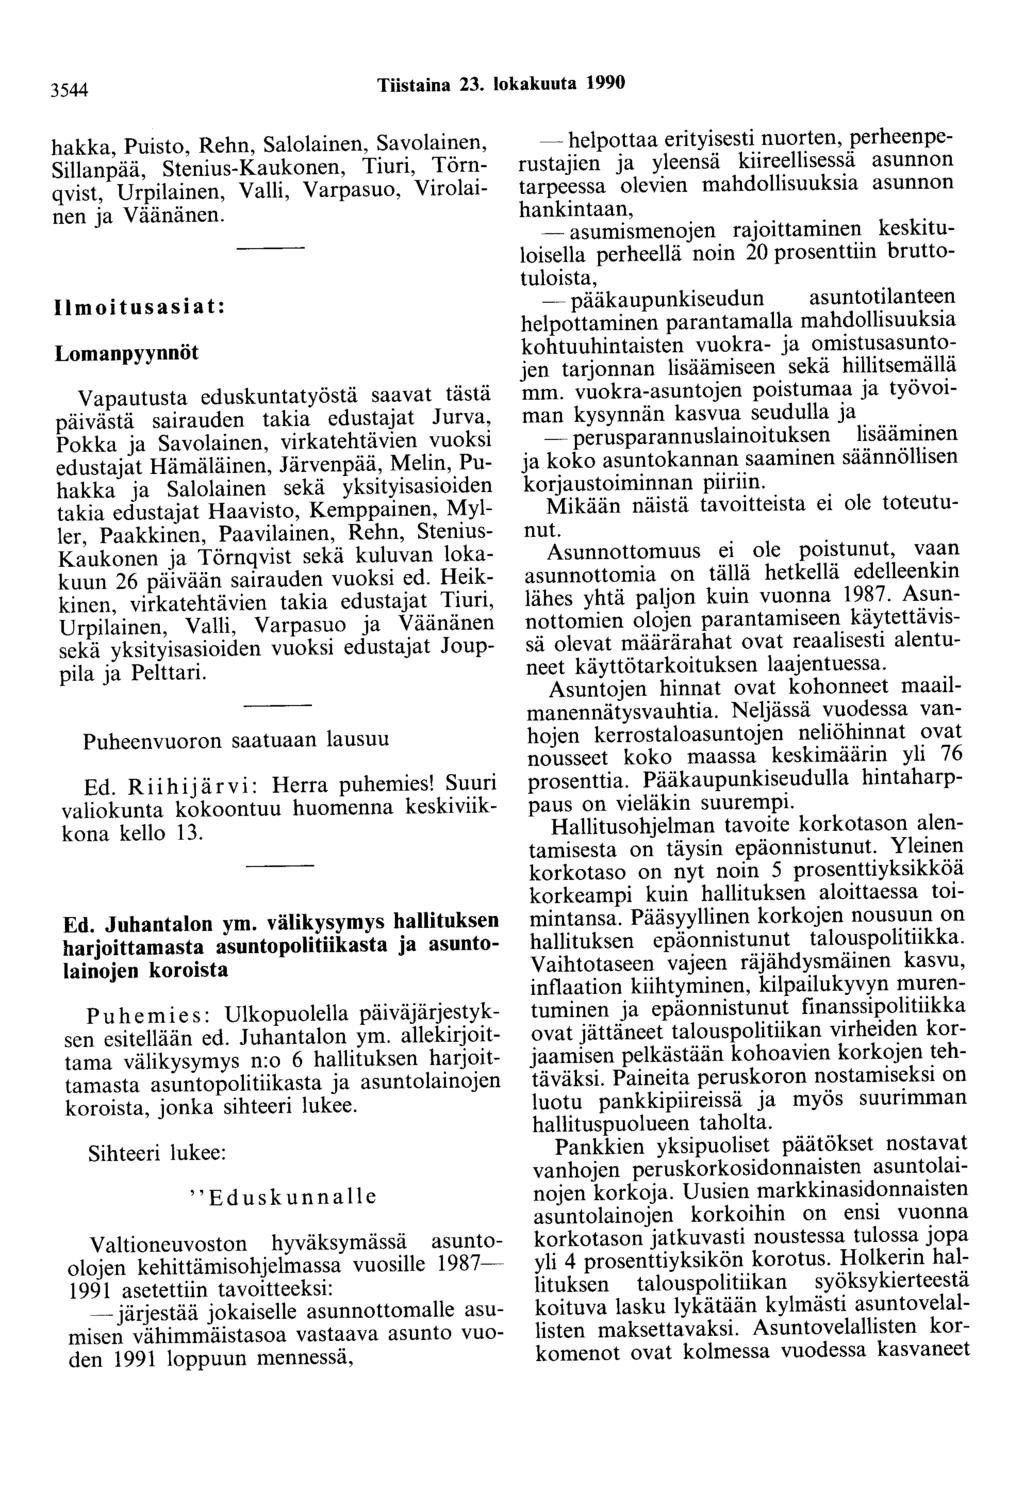 3544 Tiistaina 23. lokakuuta 1990 hakka, Puisto, Rehn, Salolainen, Savolainen, Sillanpää, Stenius-Kaukonen, Tiuri, Törnqvist, Urpilainen, Valli, Varpasuo, Virolainen ja Väänänen.